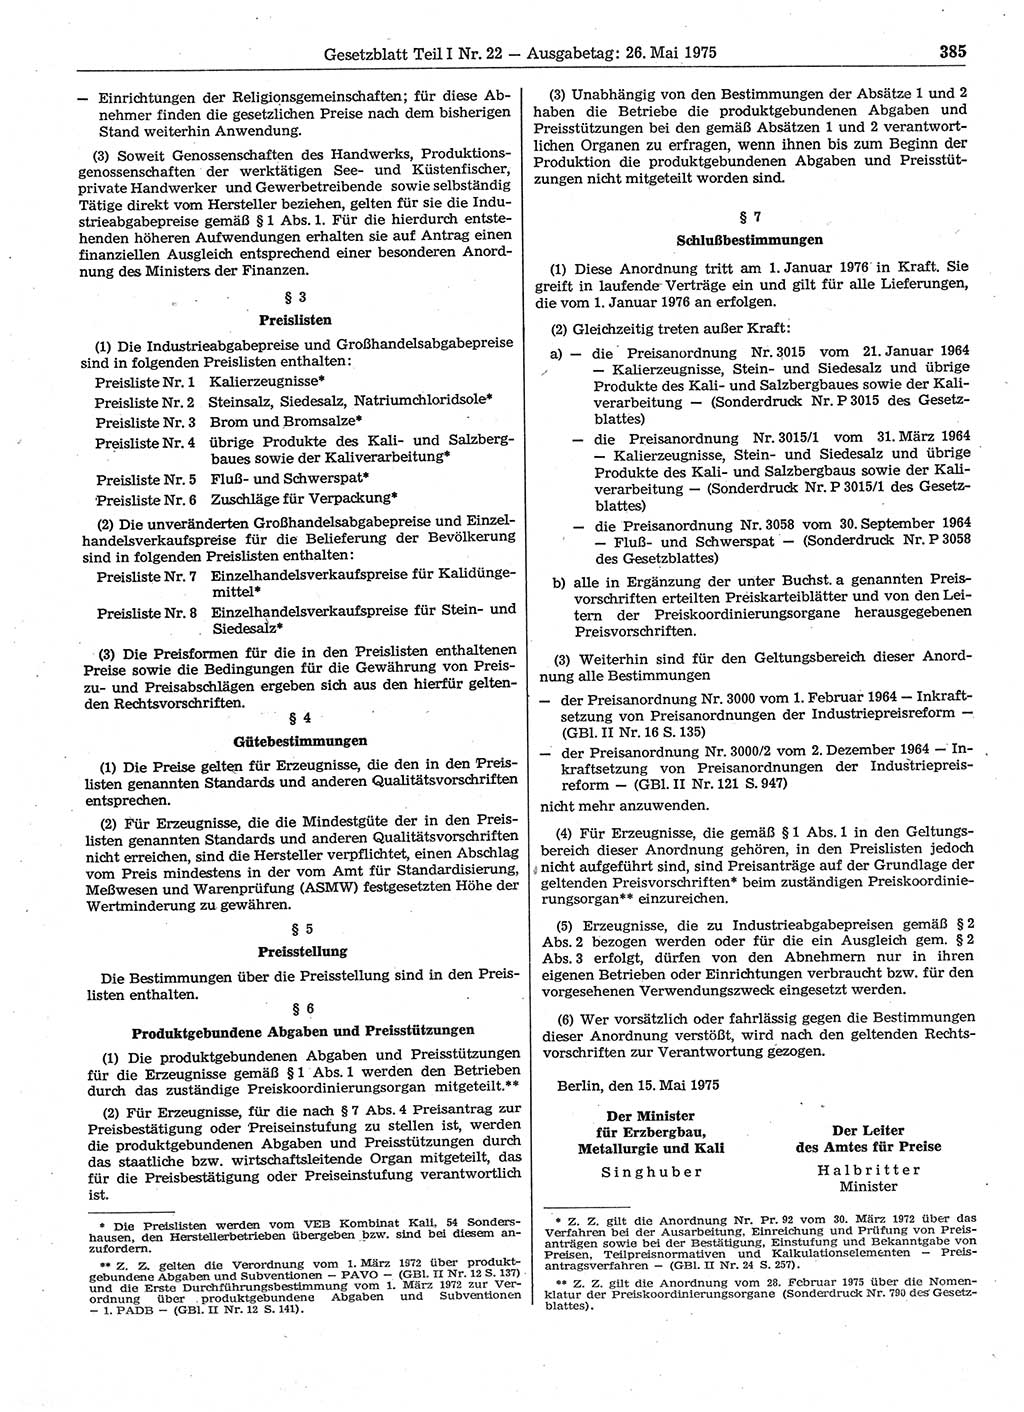 Gesetzblatt (GBl.) der Deutschen Demokratischen Republik (DDR) Teil Ⅰ 1975, Seite 385 (GBl. DDR Ⅰ 1975, S. 385)